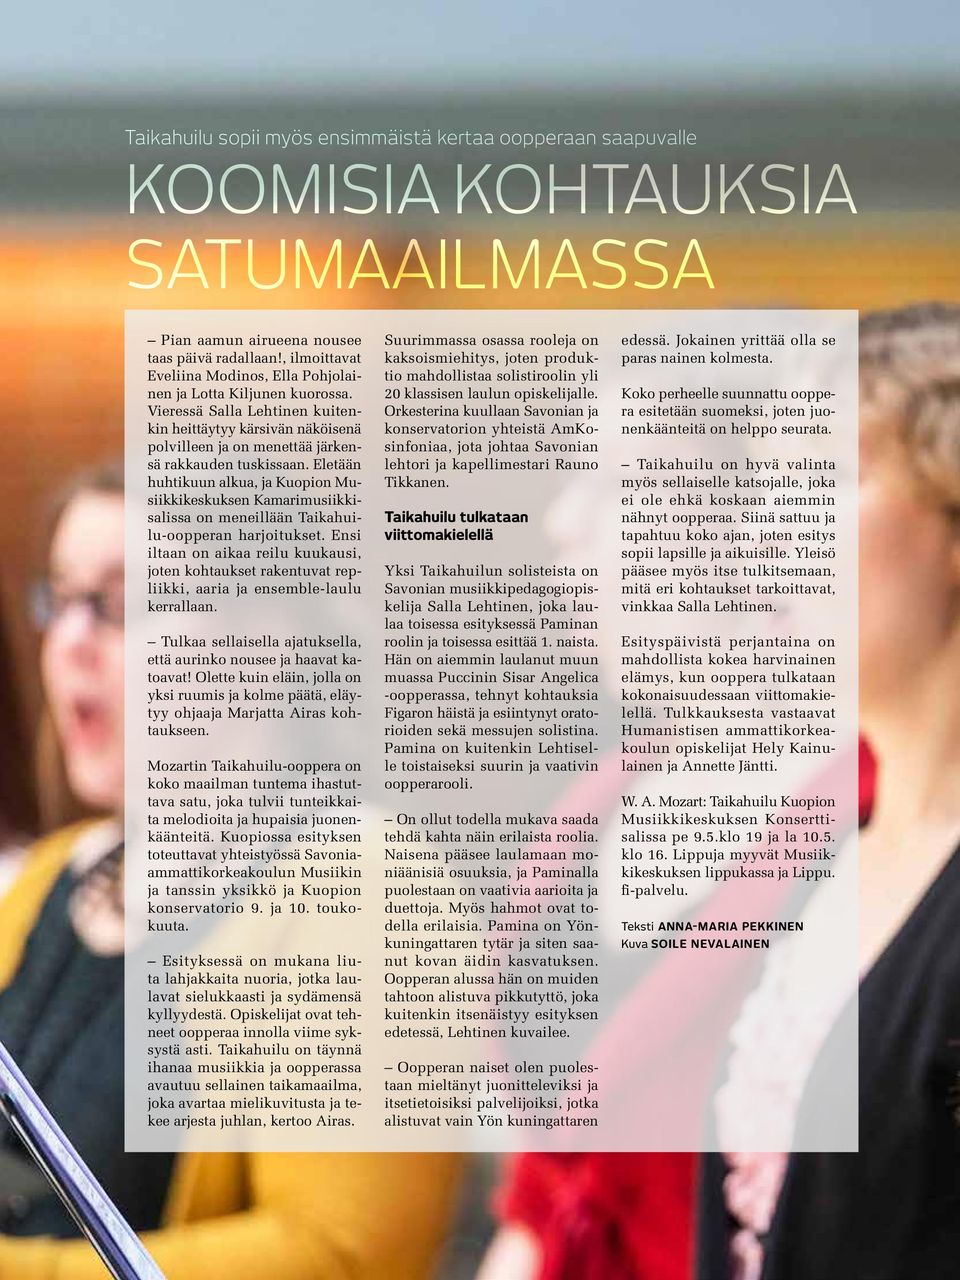 Eletään huhtikuun alkua, ja Kuopion Musiikkikeskuksen Kamarimusiikkisalissa on meneillään Taikahuilu-oopperan harjoitukset.